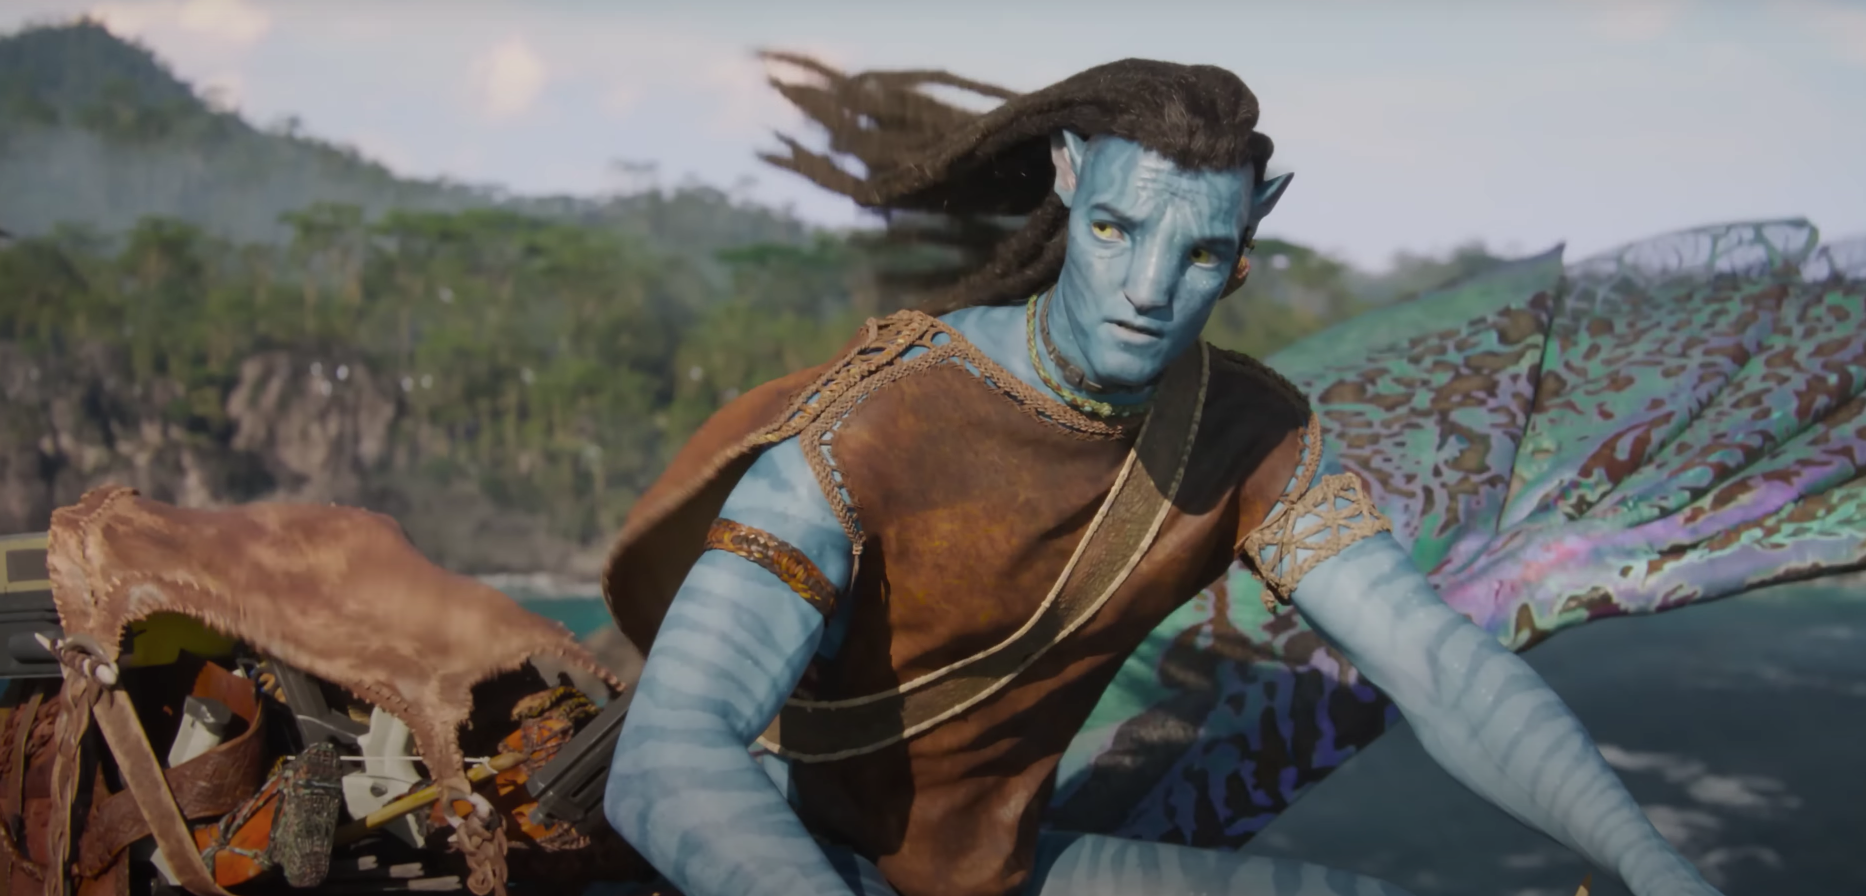 Avatar 2 : la voie de l'eau